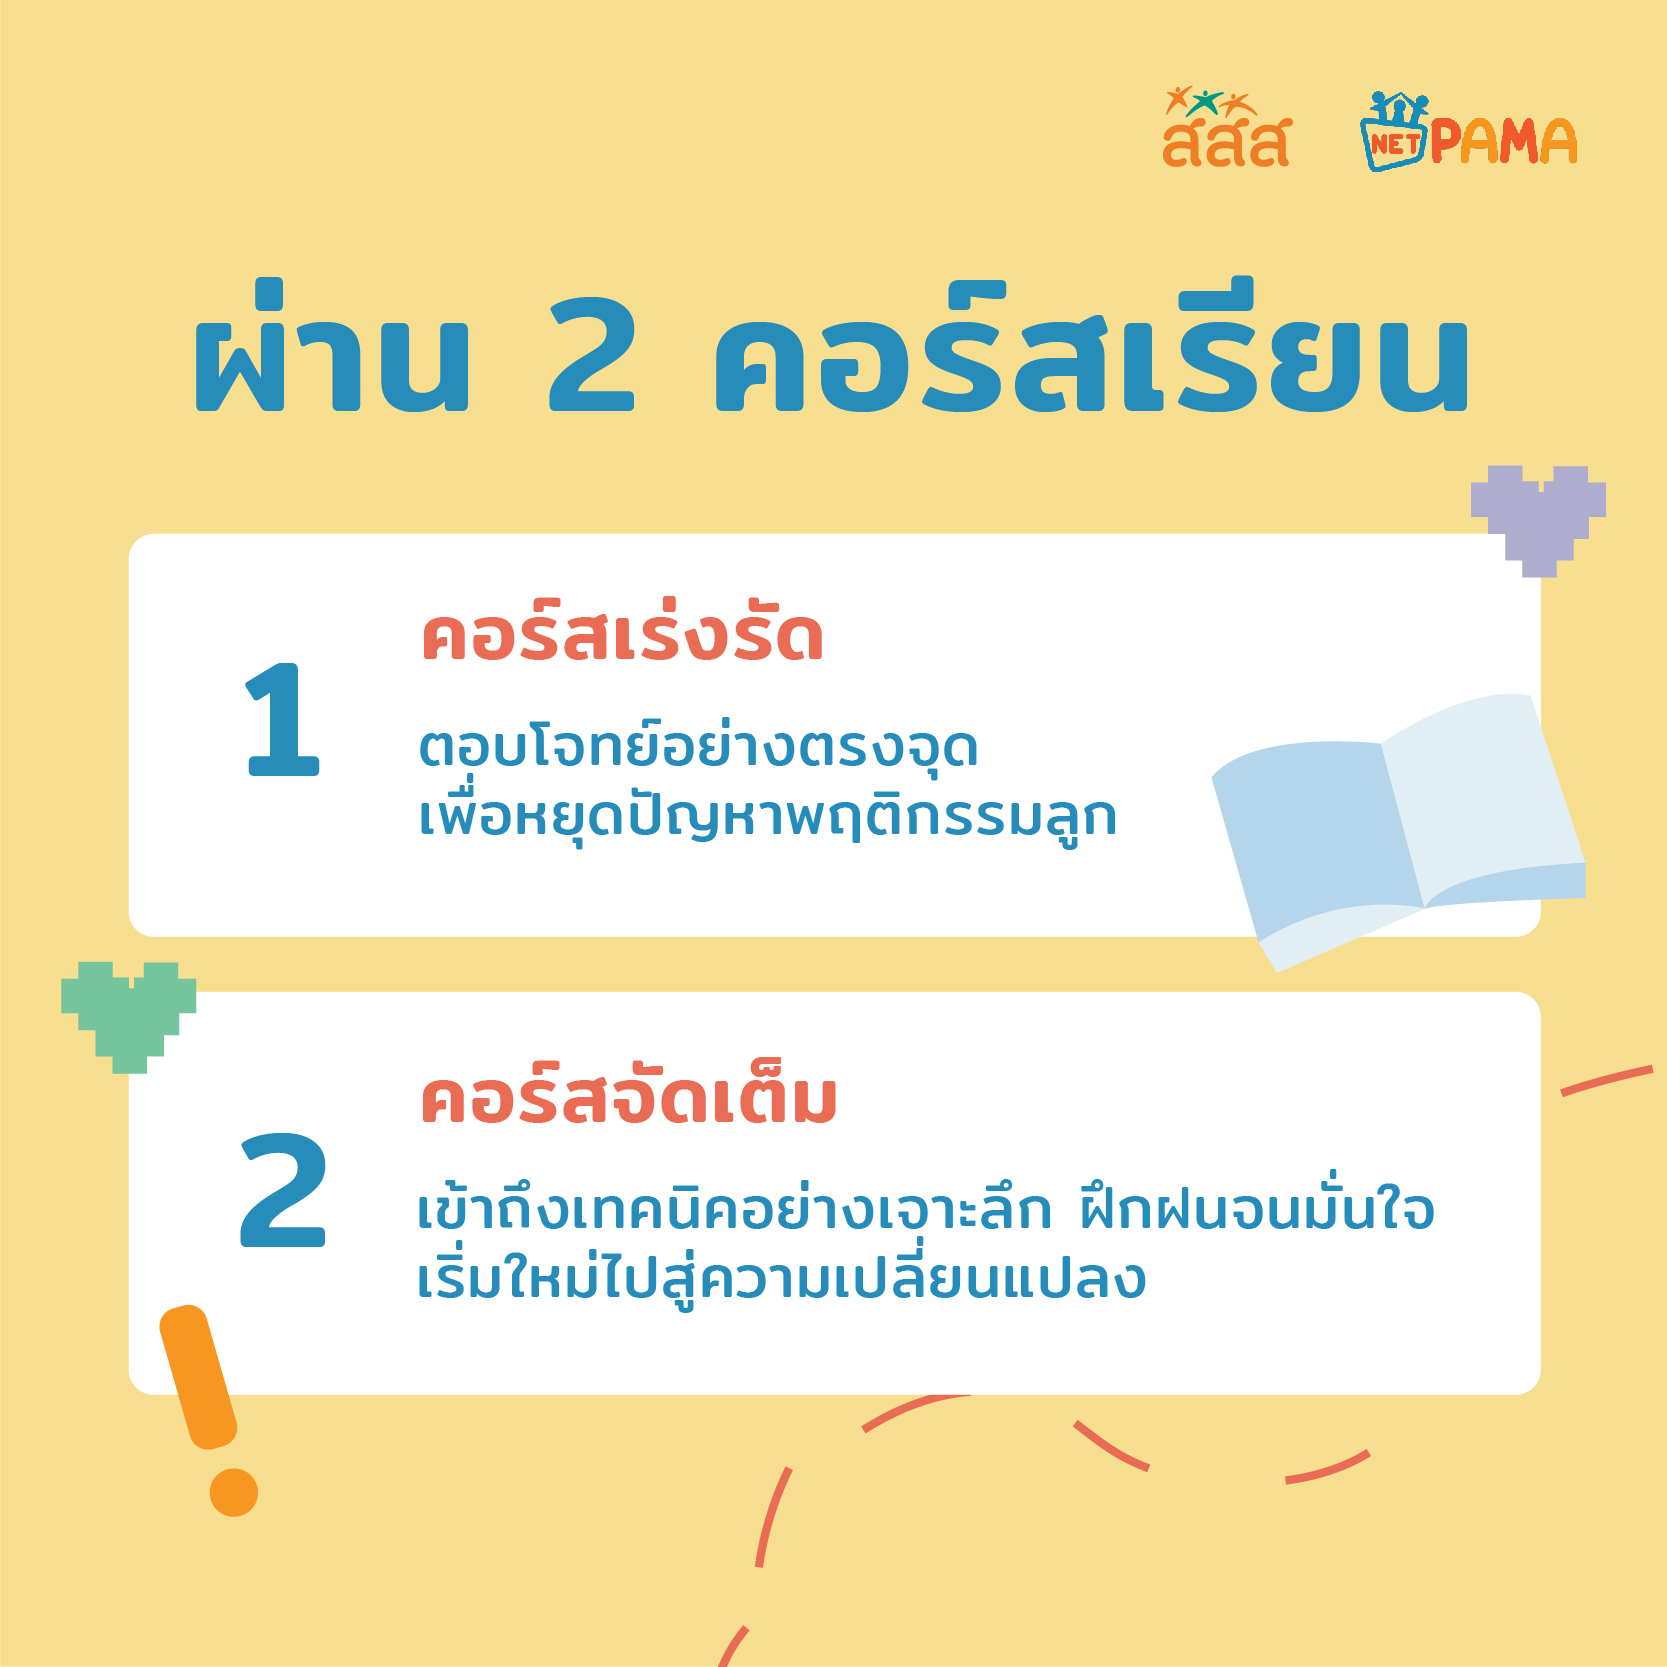 พัฒนาหลักสูตรเลี้ยงลูกออนไลน์ NET PA-MA เน็ต ป๊า-ม้า สอน 6 เทคนิคเลี้ยงลูกเชิงบวก   thaihealth